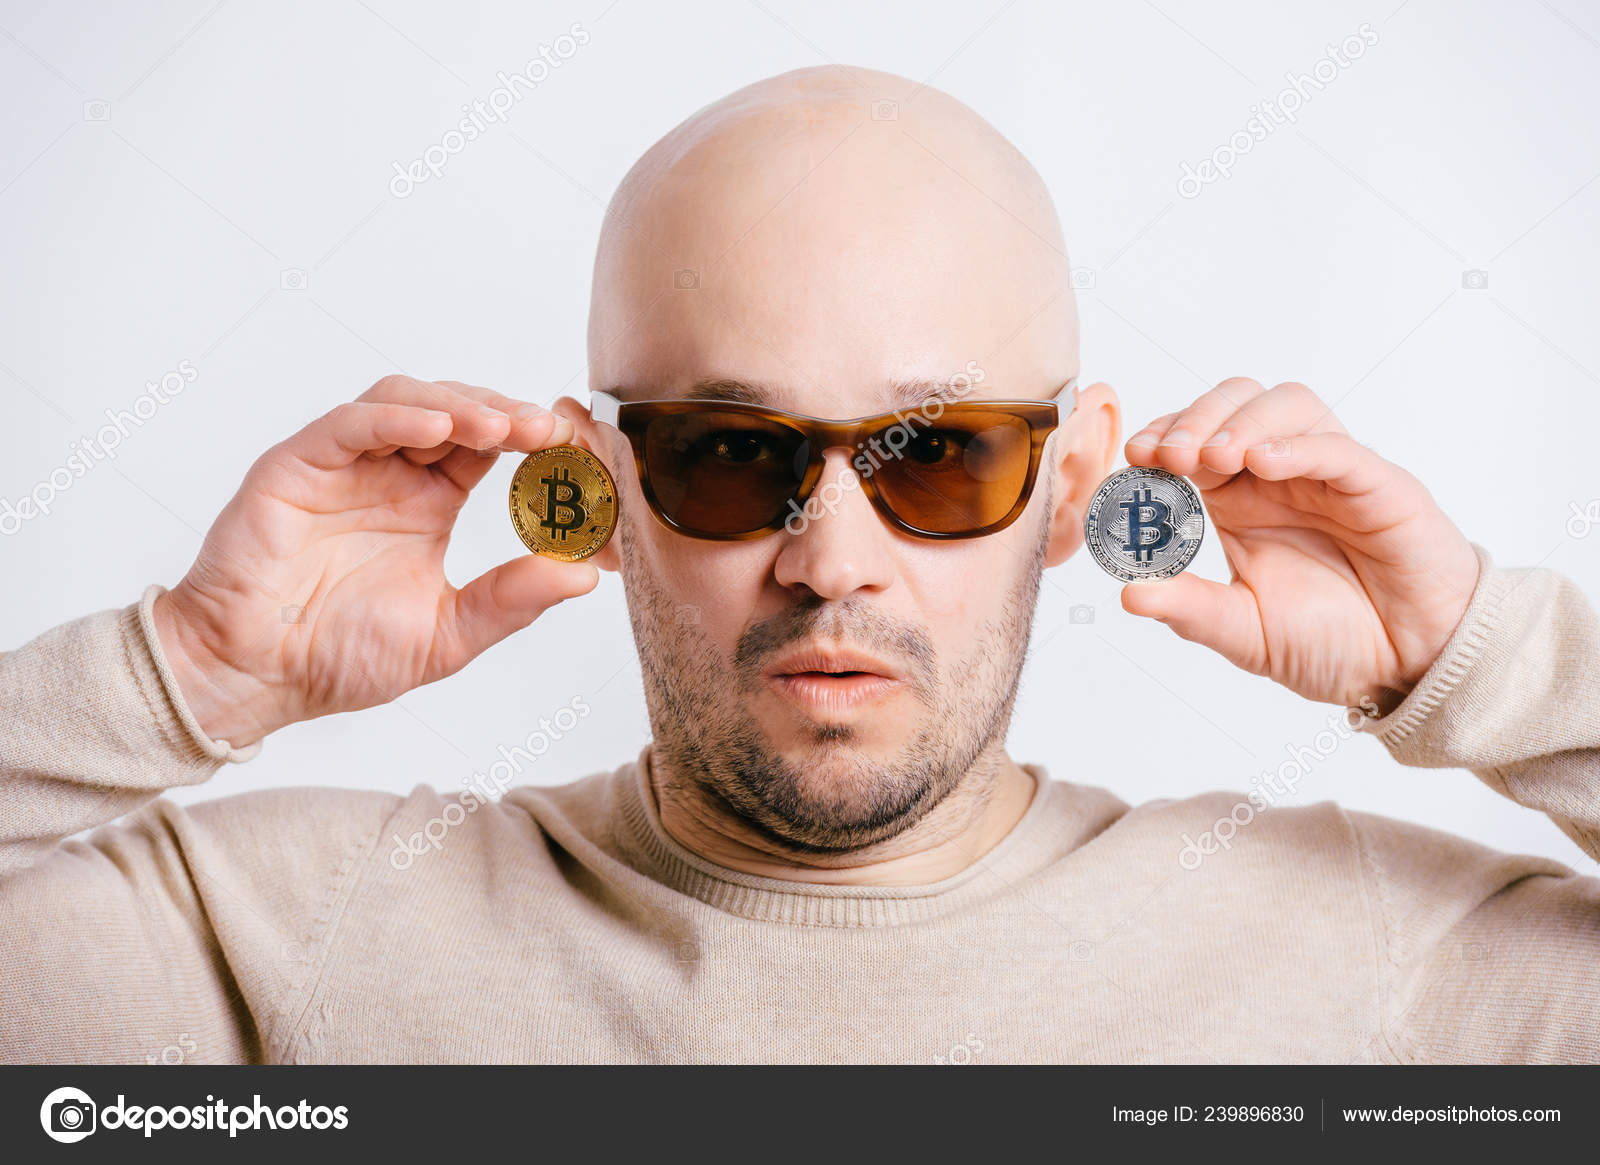 Funny bald man Stock Photos, Royalty Free Funny bald man Images |  Depositphotos